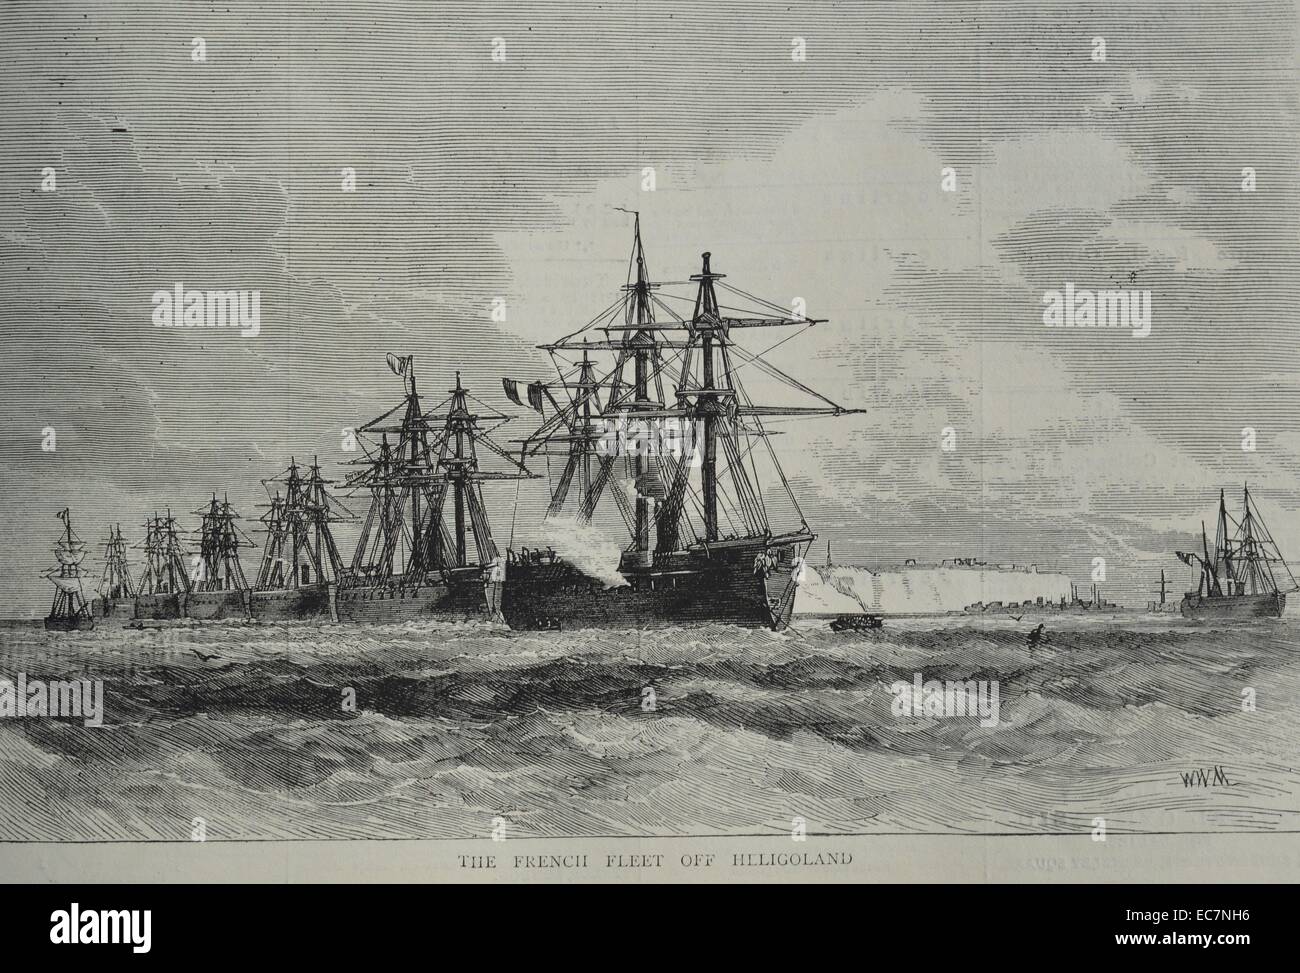 Gravure de la flotte française au large de l'île d'Heligoland, un petit archipel allemand dans la mer du Nord. Datée 1870 Banque D'Images